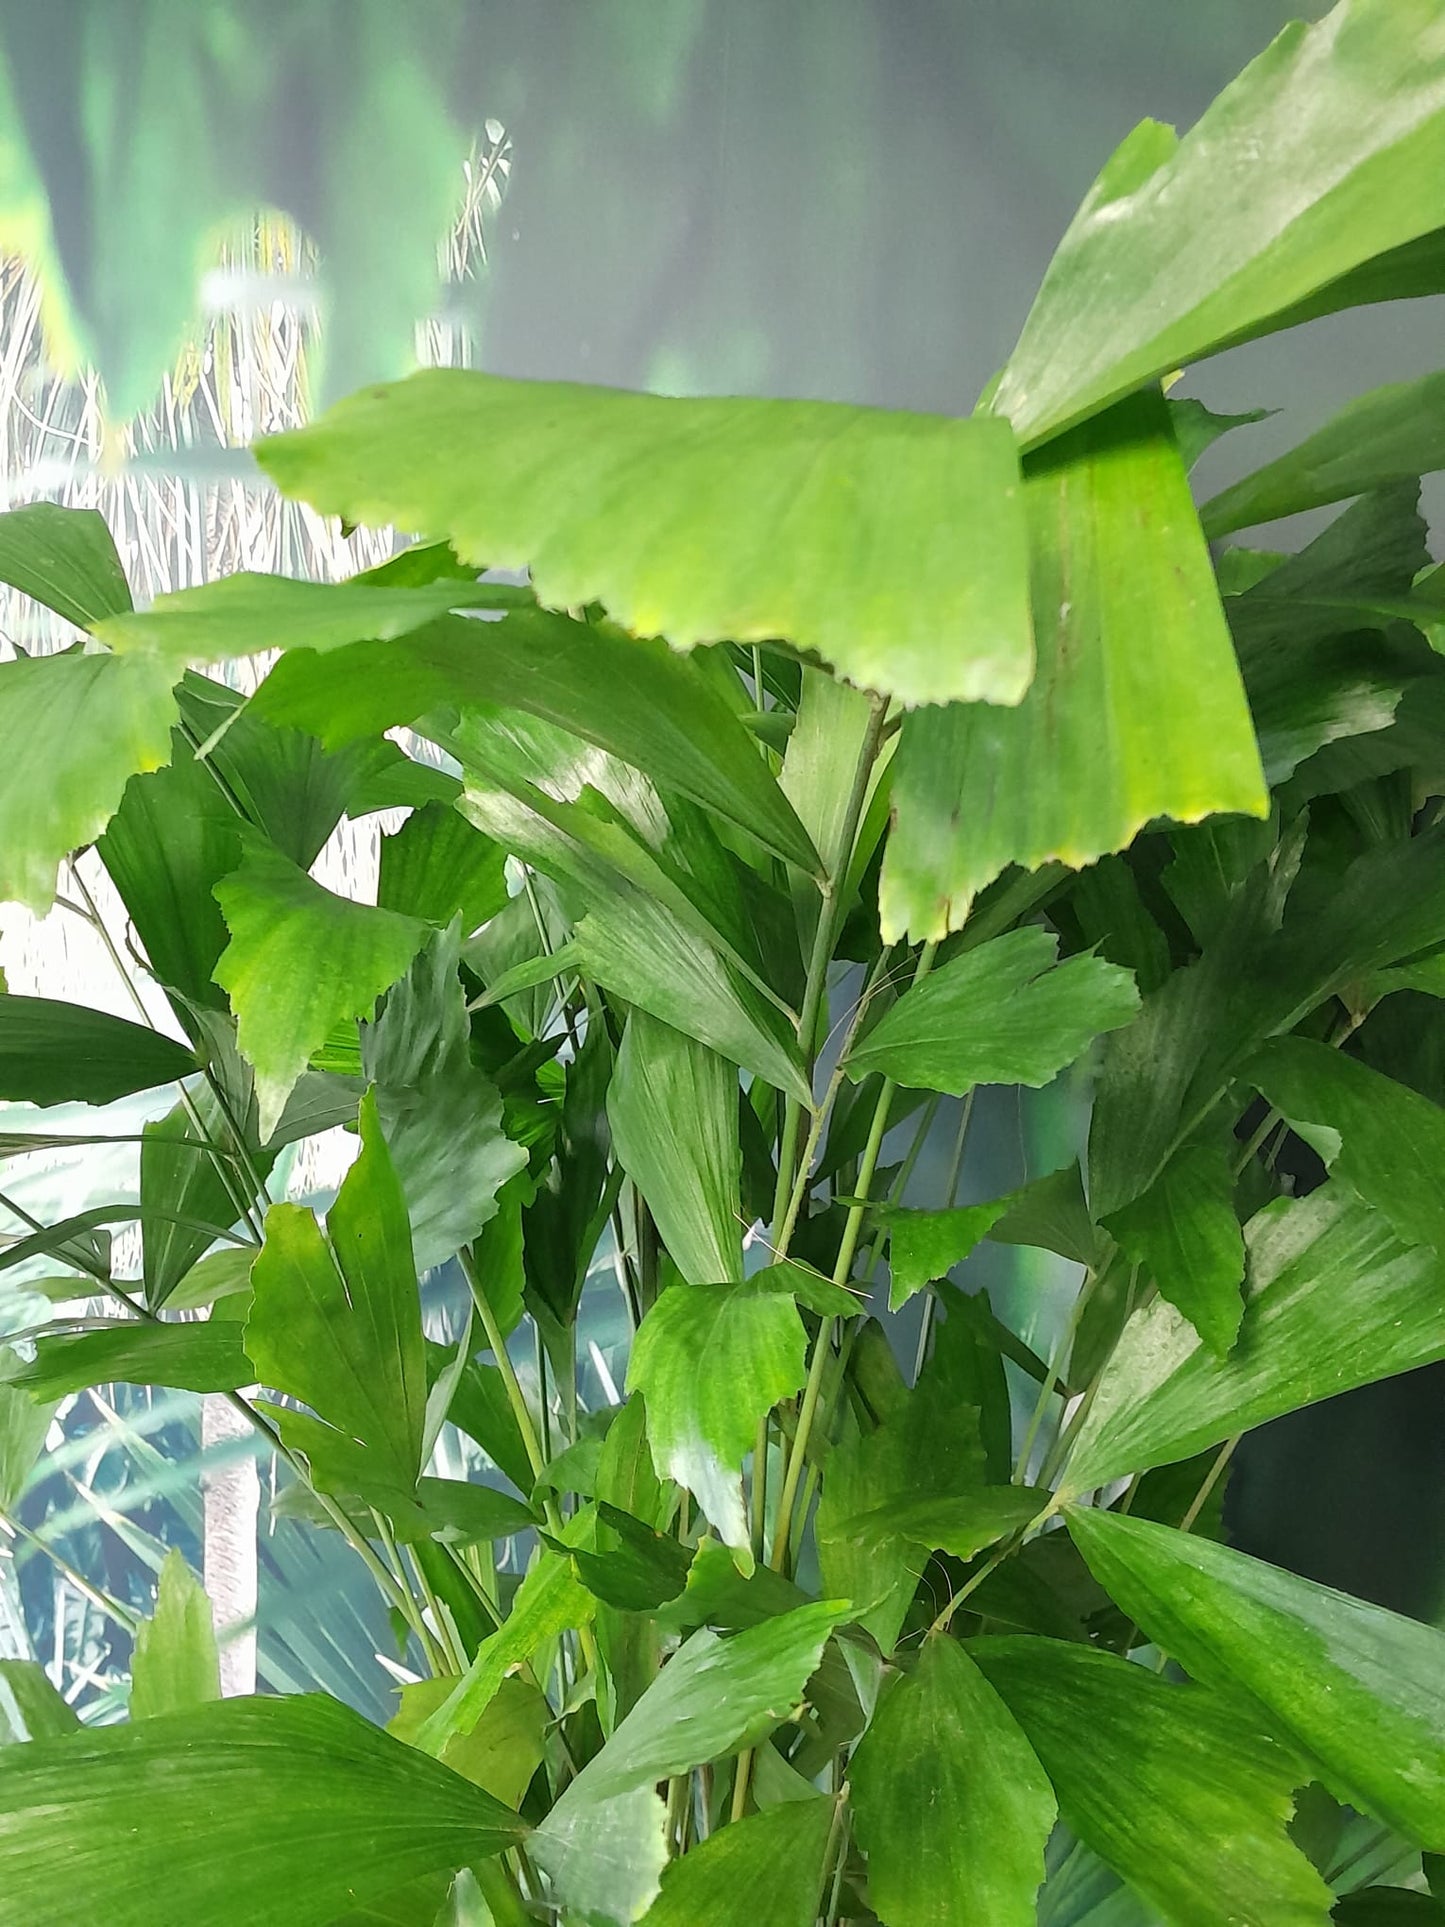 Fischschwanzpalme - Caryota mitis - Brennpalmen - Zimmerpflanze